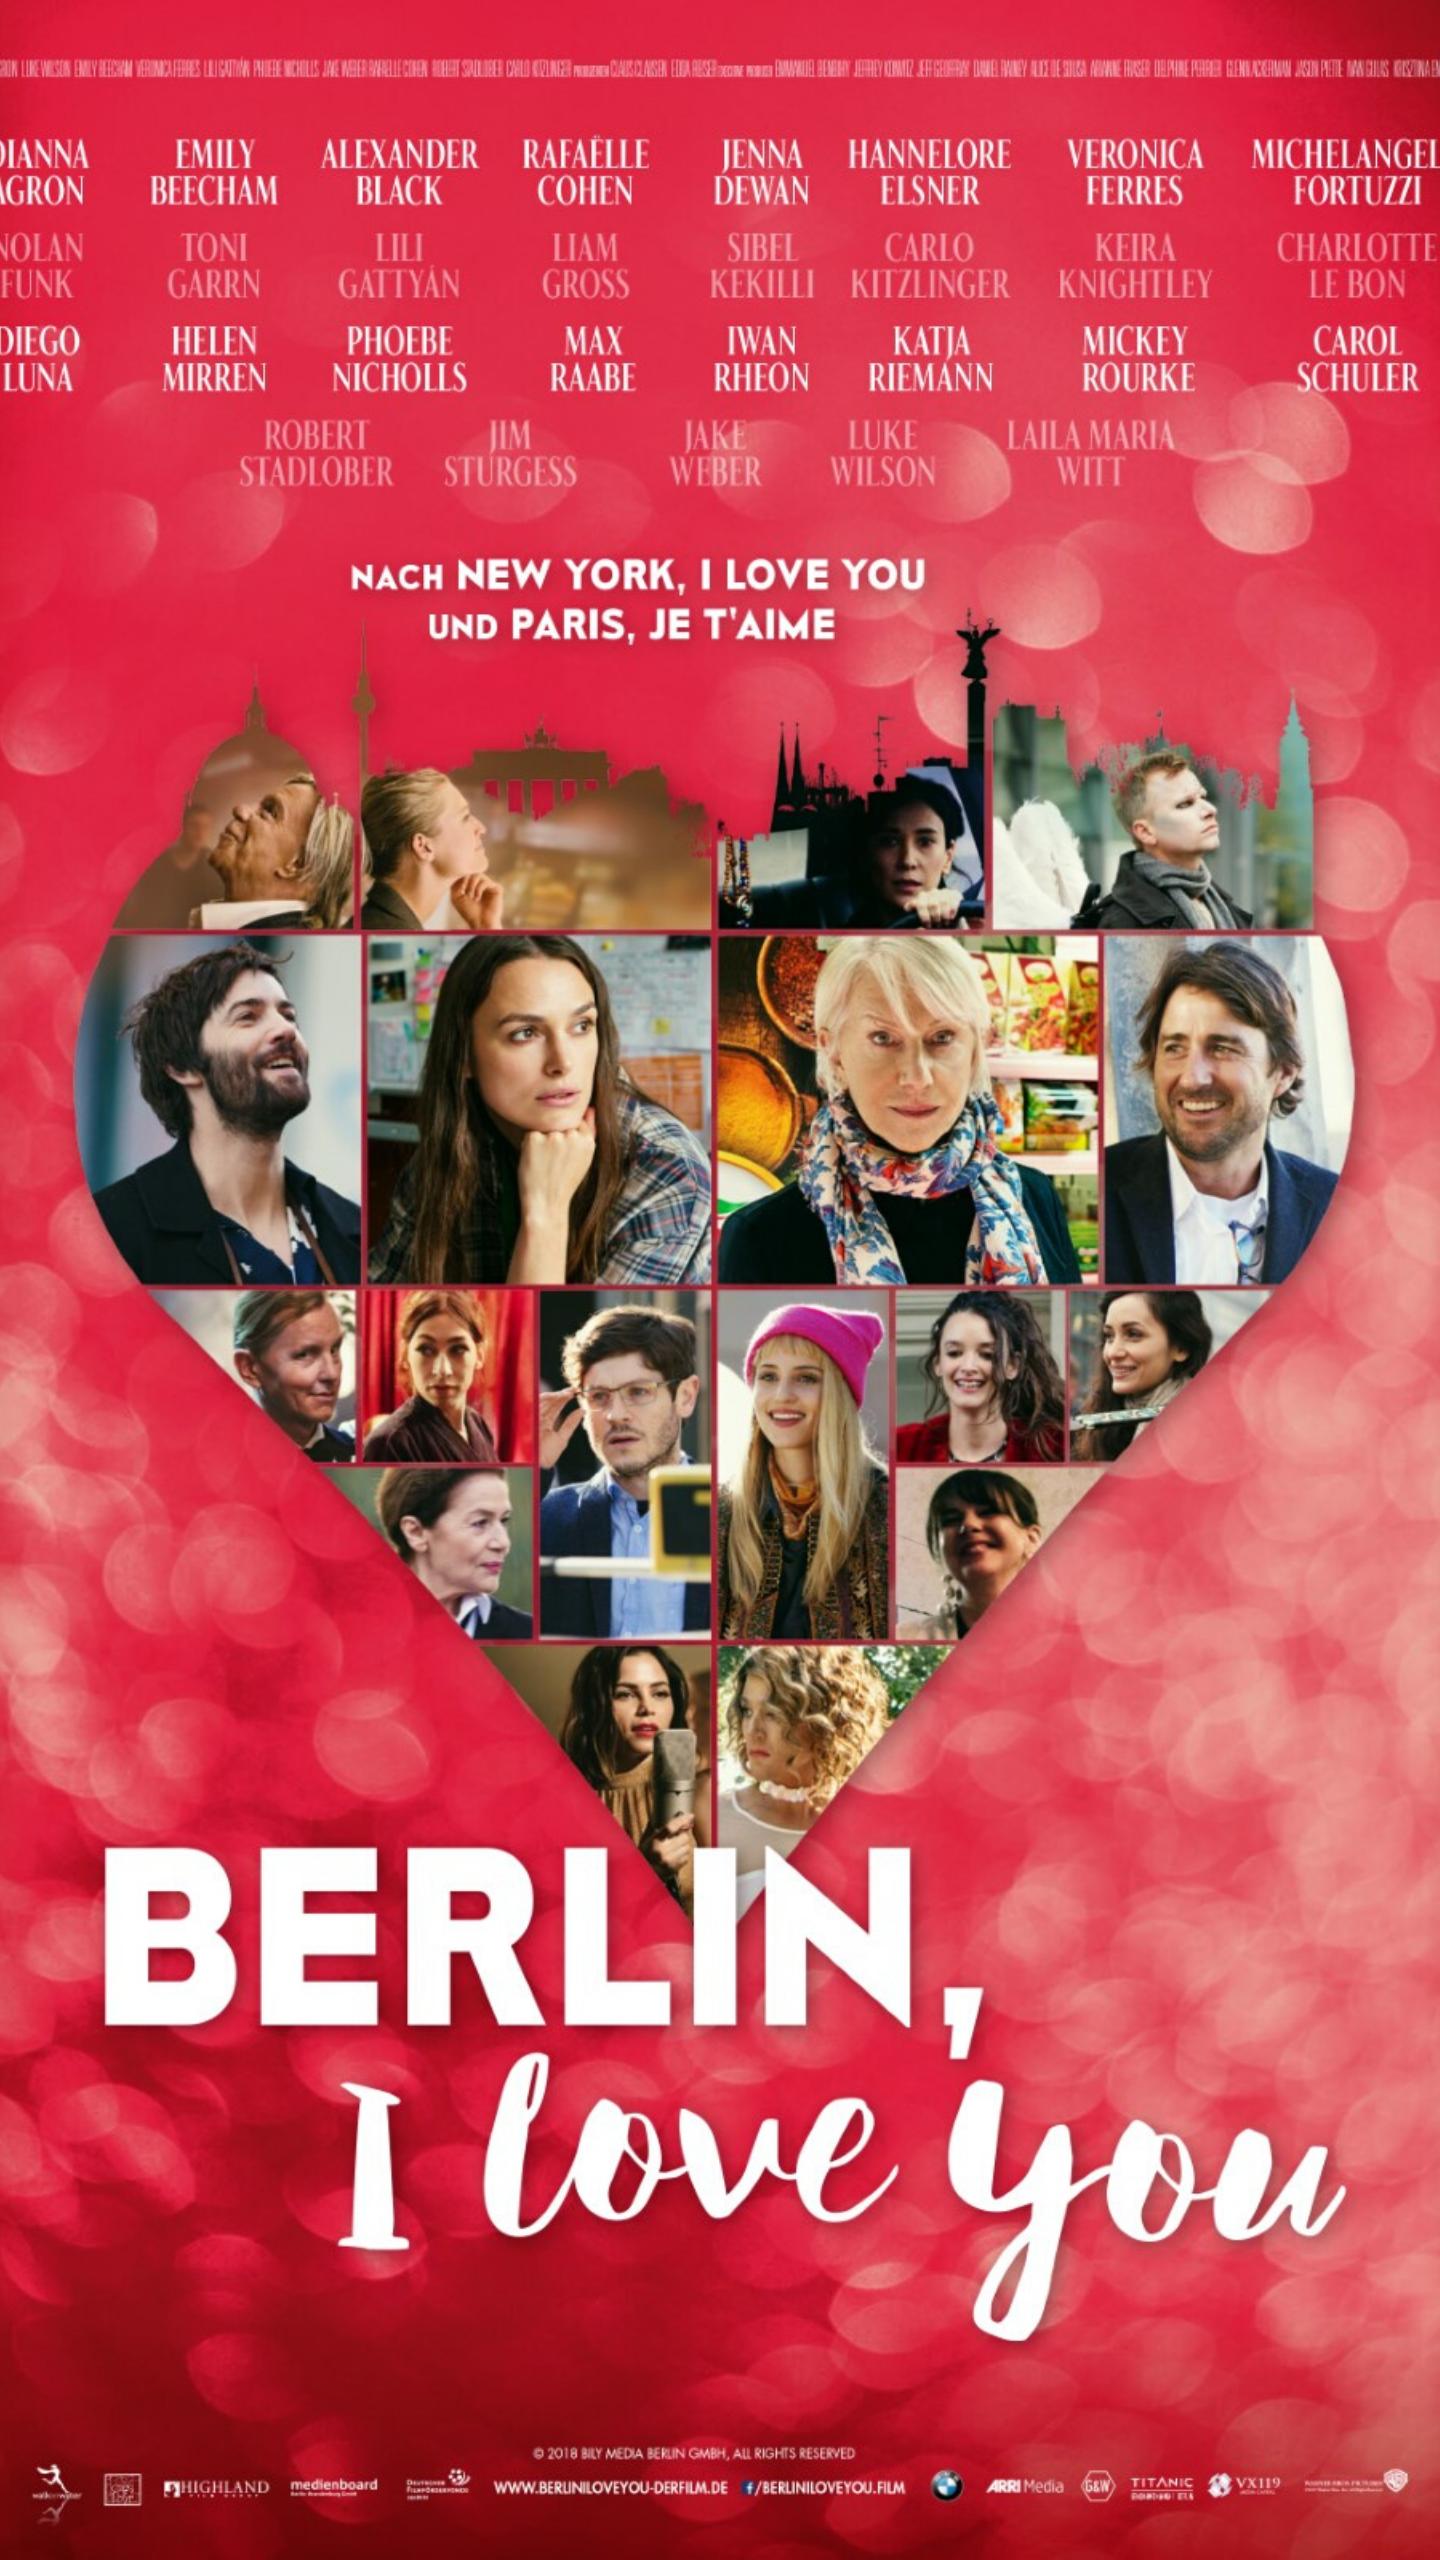 Берлин я люблю тебя. Берлин я люблю тебя фильм 2019. Берлин я люблю тебя Постер. Берлин я люблю тебя фильм 2019 Постер. Вероника Феррес Берлин я люблю тебя.